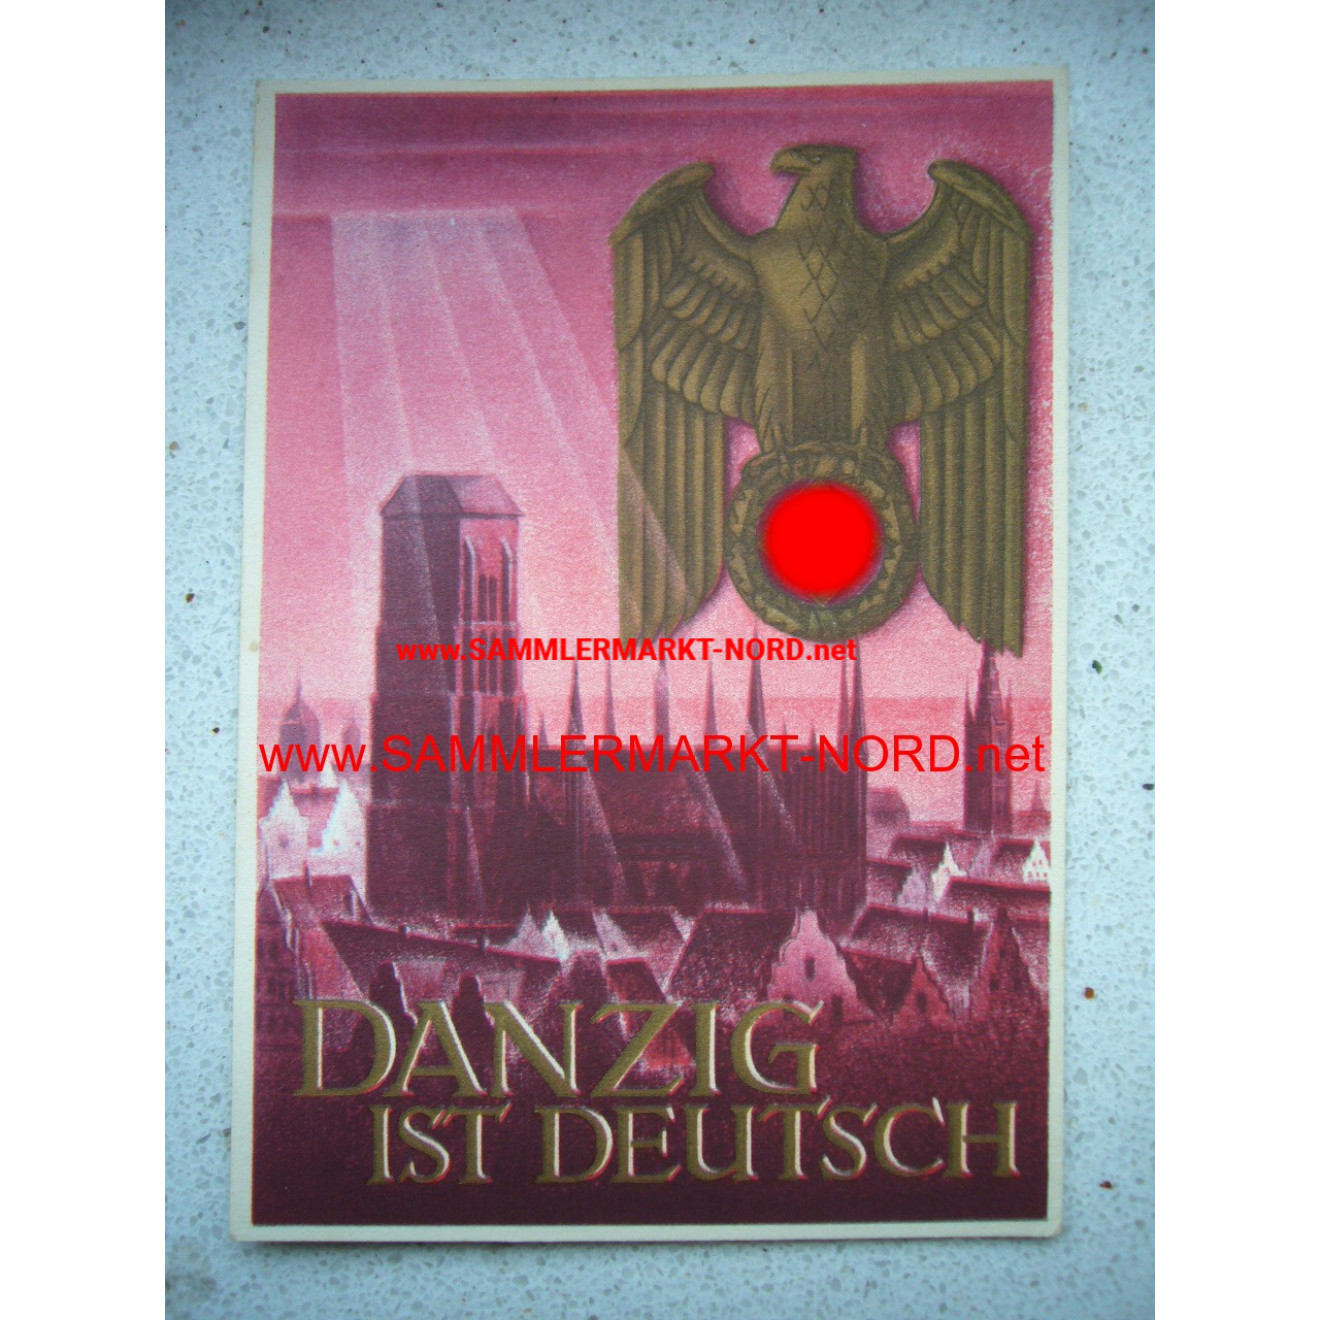 Danzig ist deutsch (WHW)